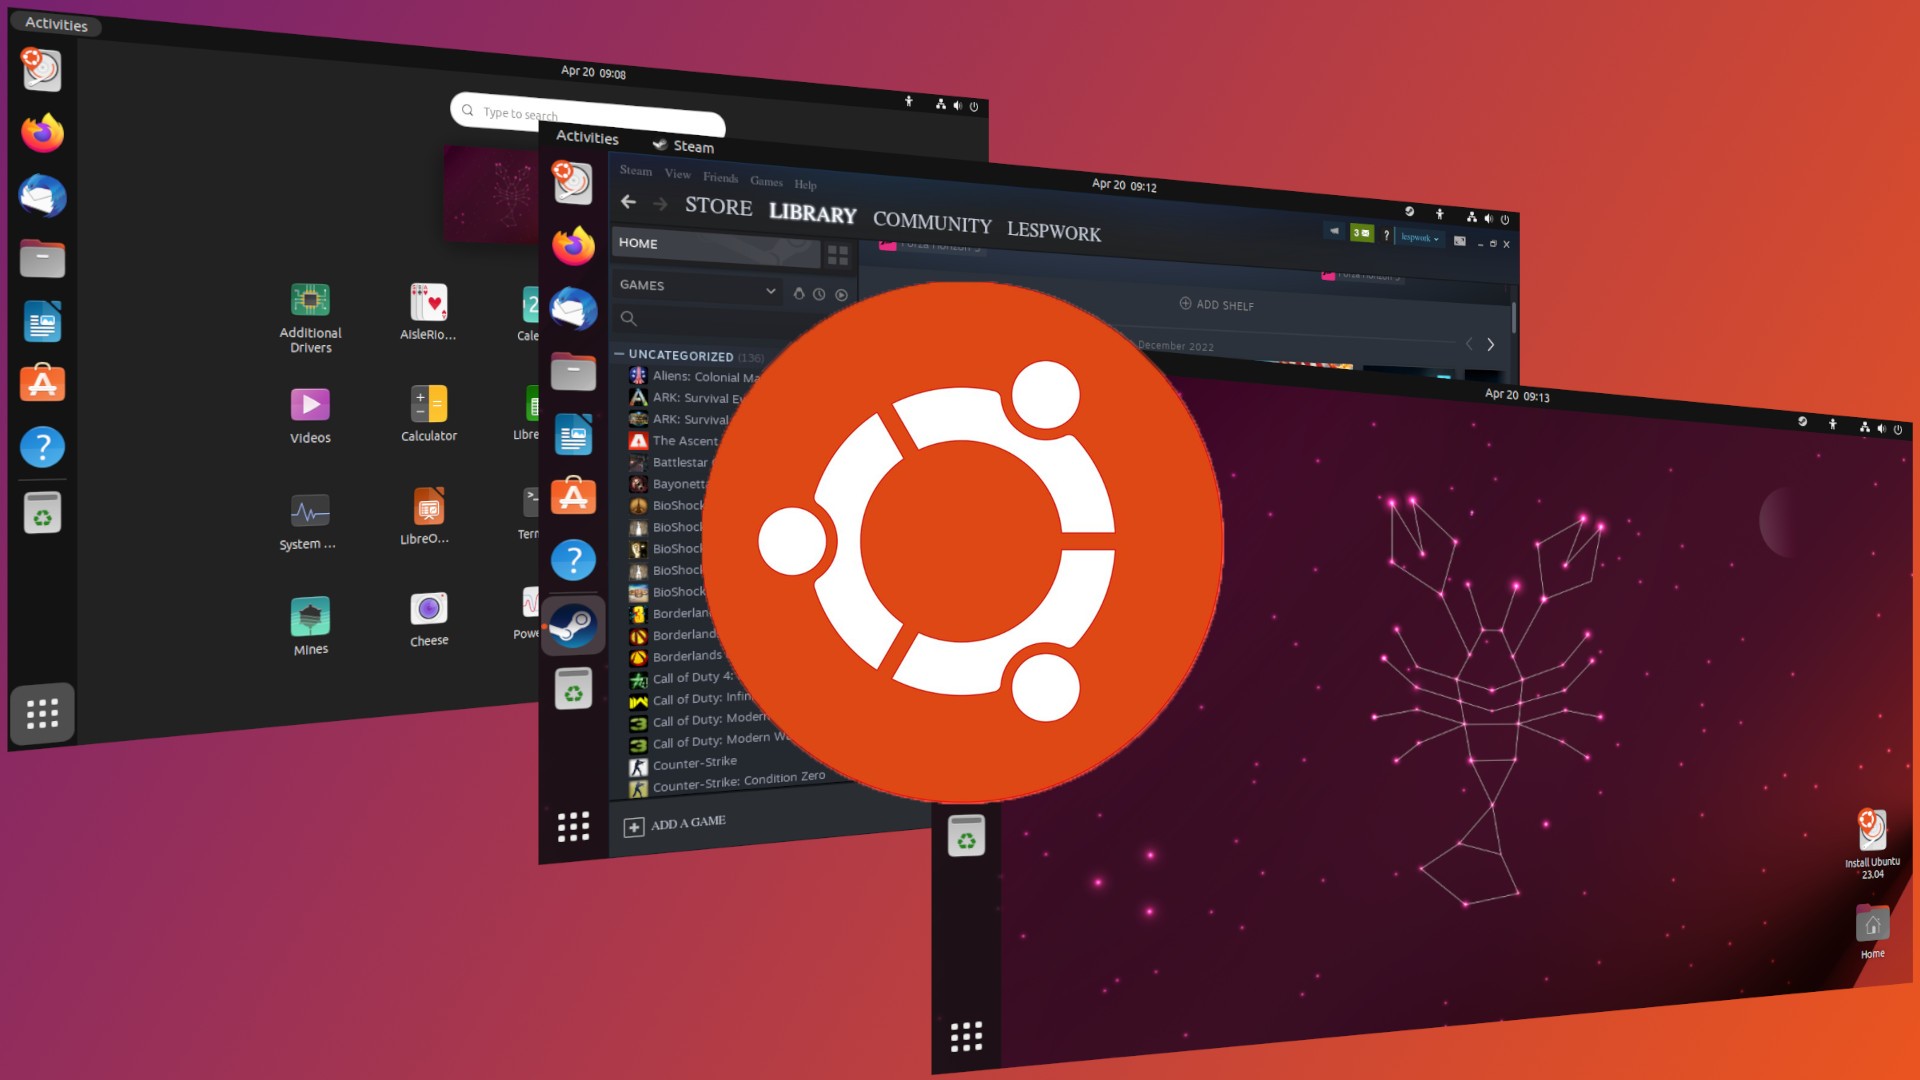 Baixar apps Android no PC - Veja como fazer isso no Ubuntu